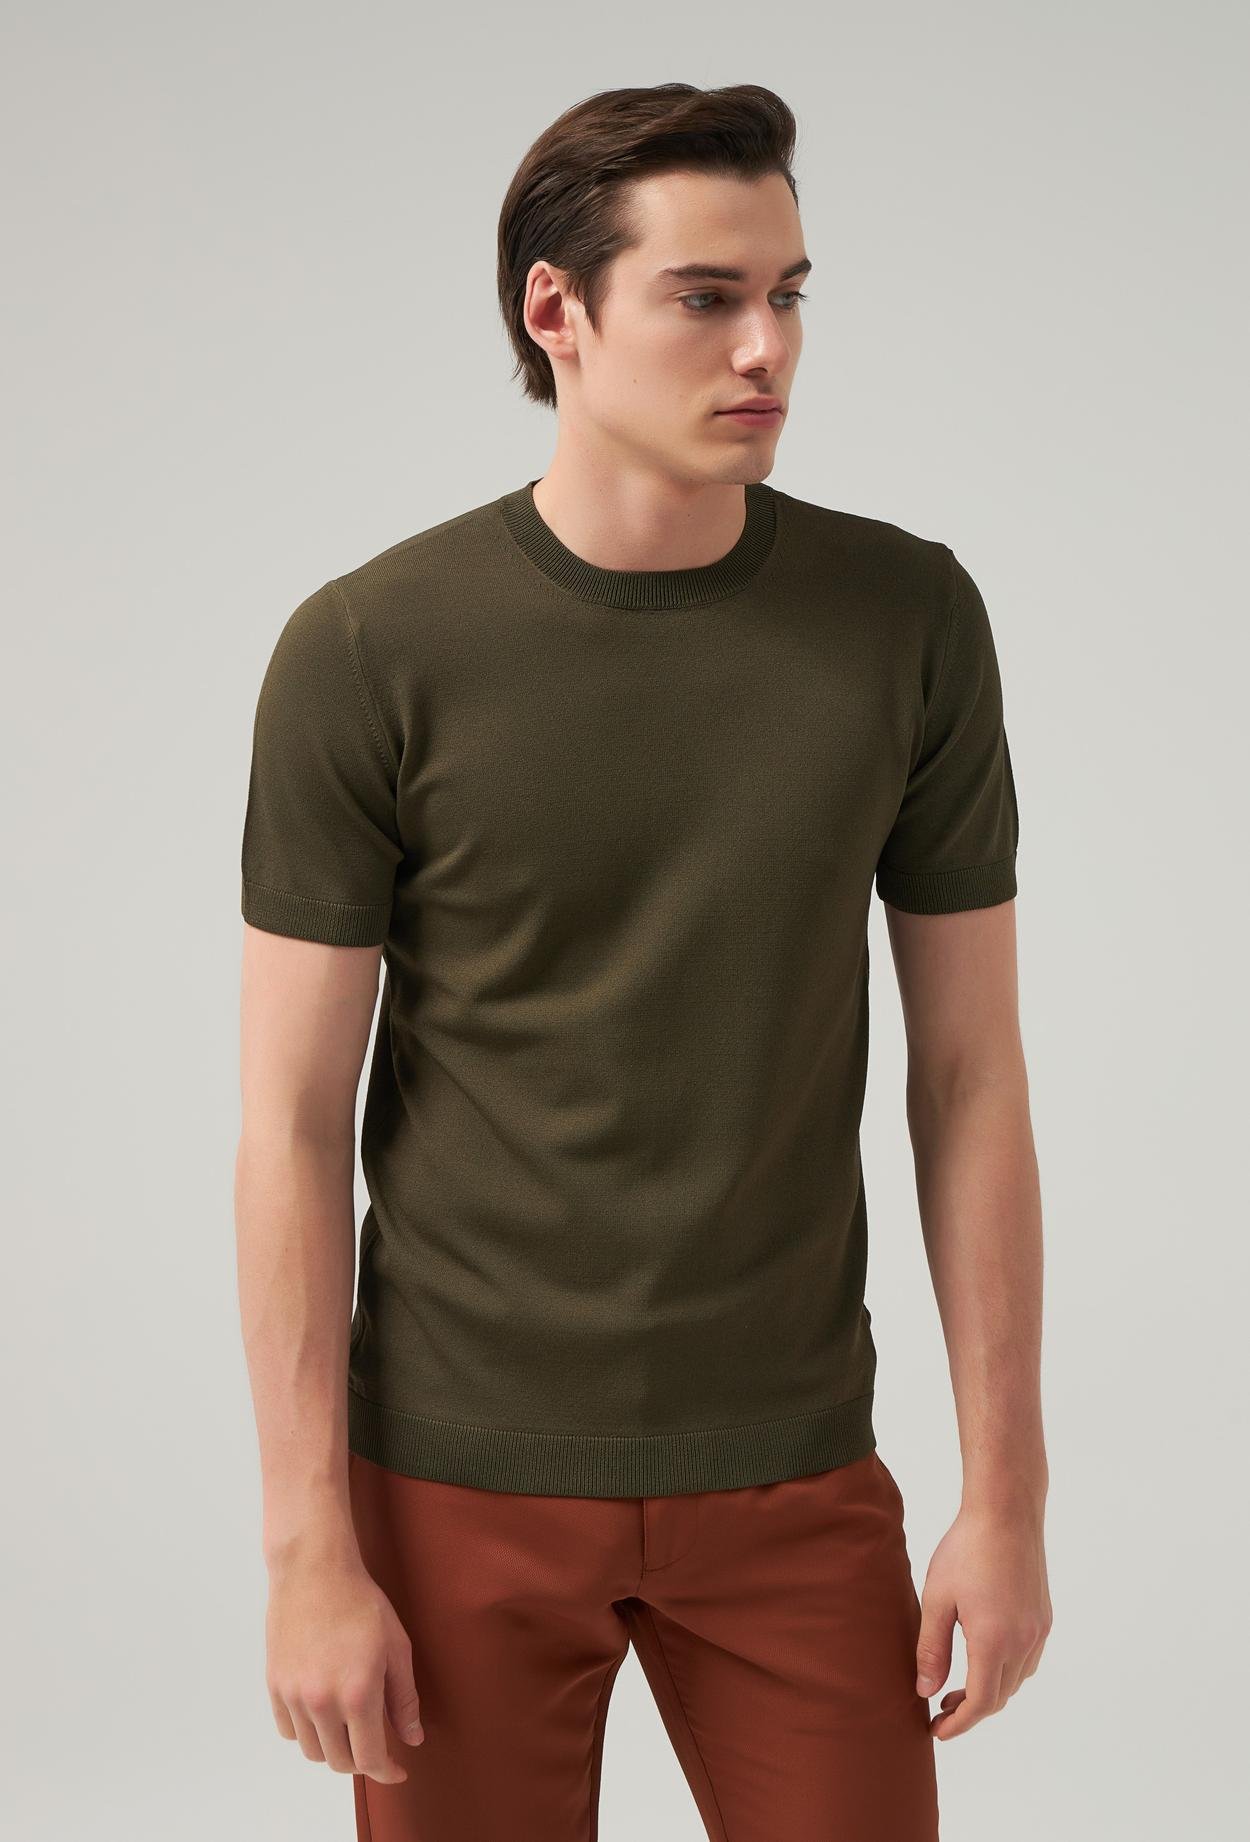 Twn Slim Fit Haki Düz Örgü Rayon Örme T-Shirt